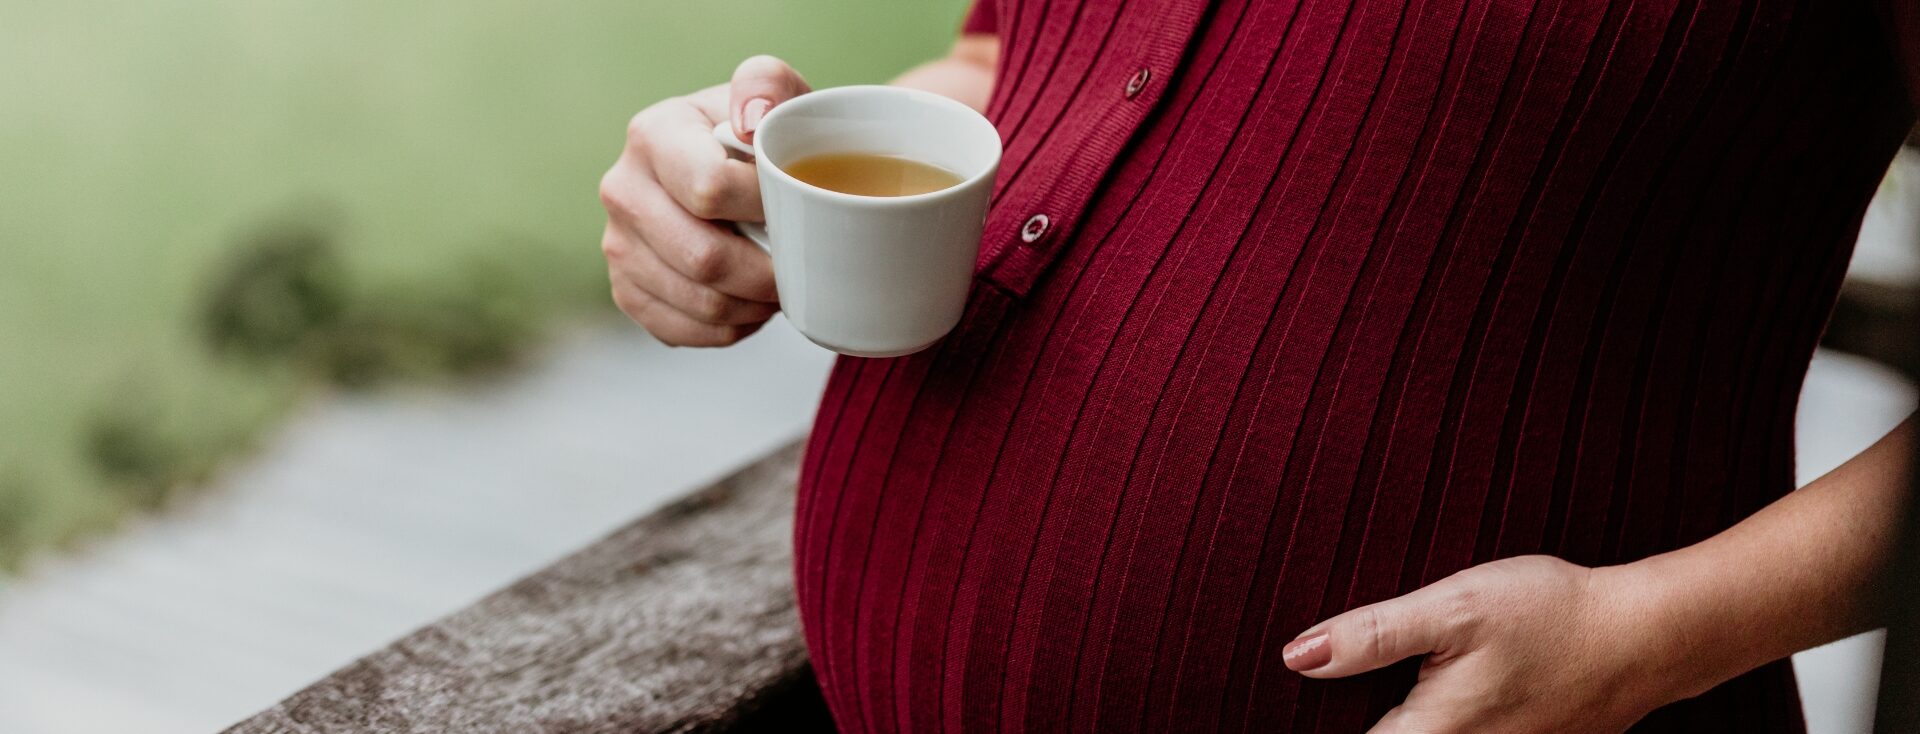 Imagem de uma gestante tomando chá na gravidez. A imagem mostra apenas a barriga e as mãos, sendo que a mão direita está segurando a xícara de chá e a esquerda está na barriga. A gestante usa uma blusa na cor marsala.